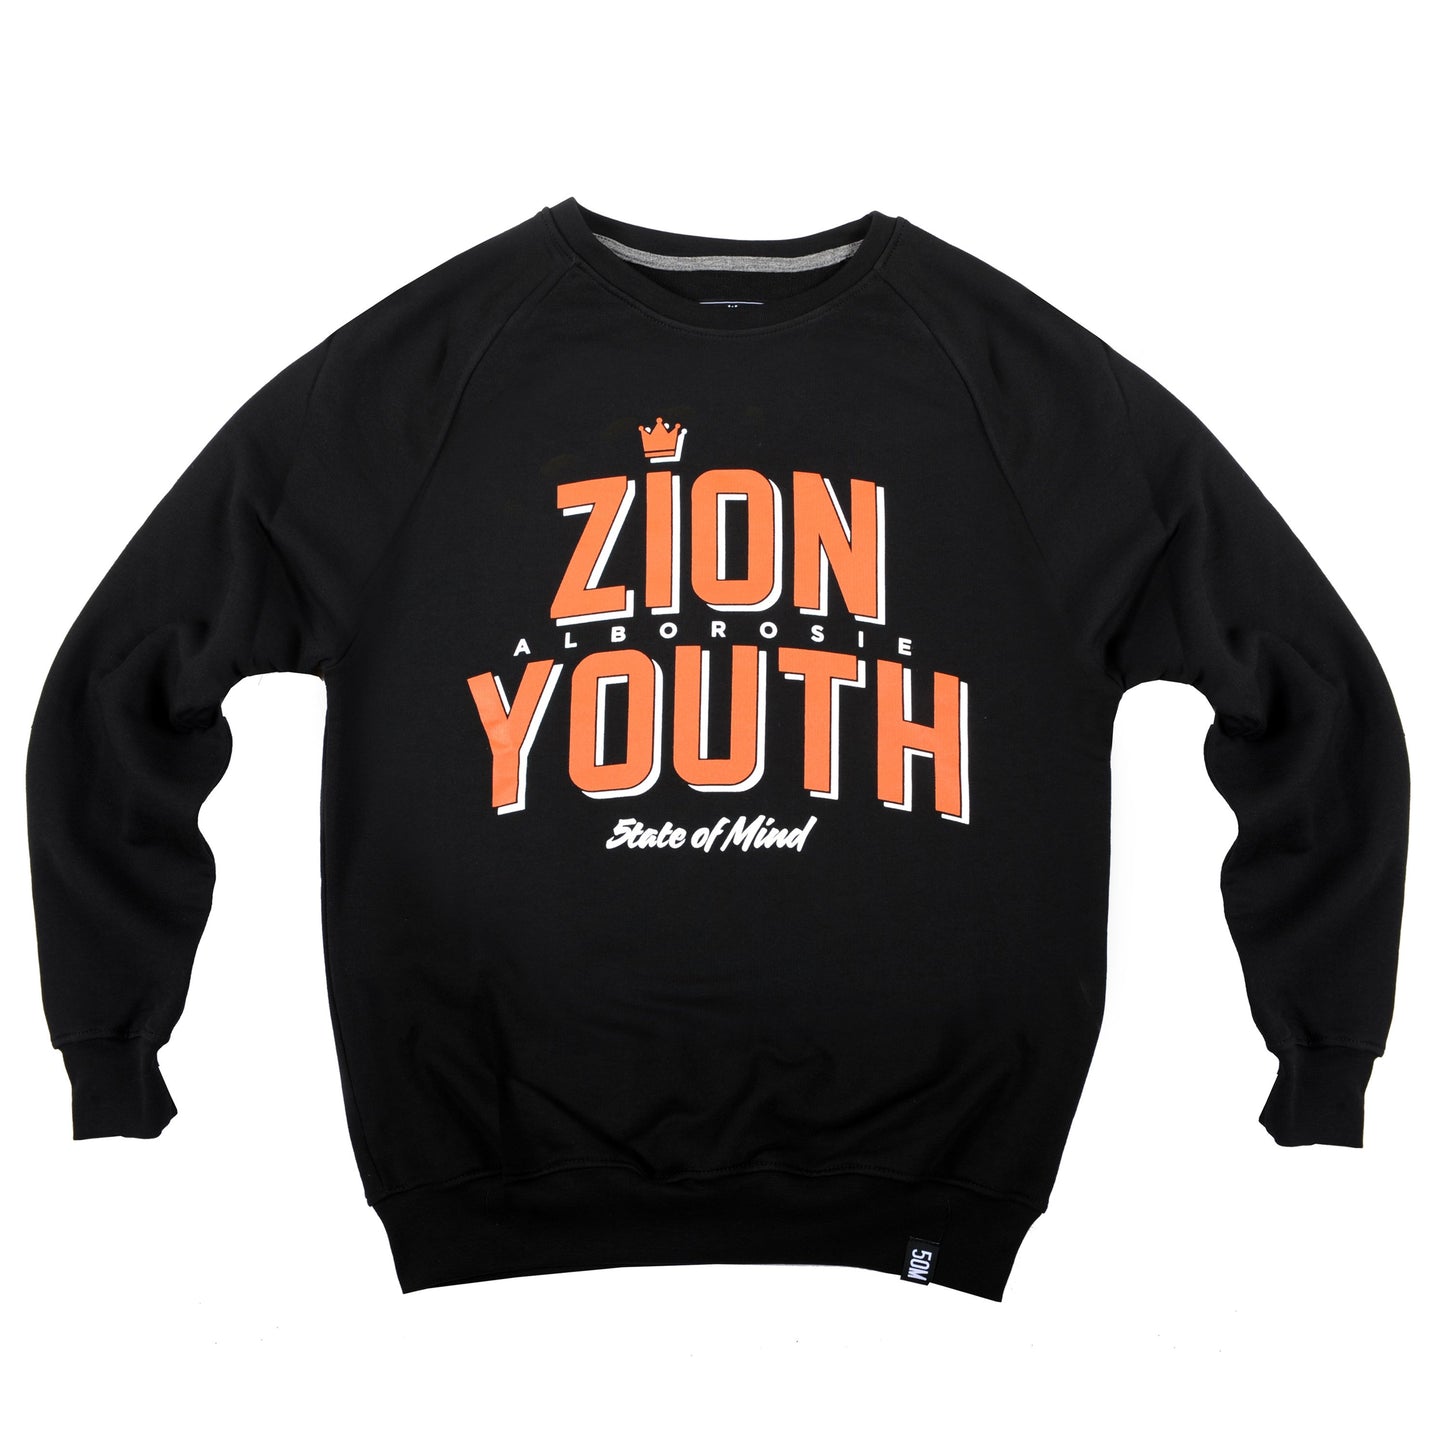 "ZION YOUTH 5OMxALBOROSIE" <br /> sweatshirt black